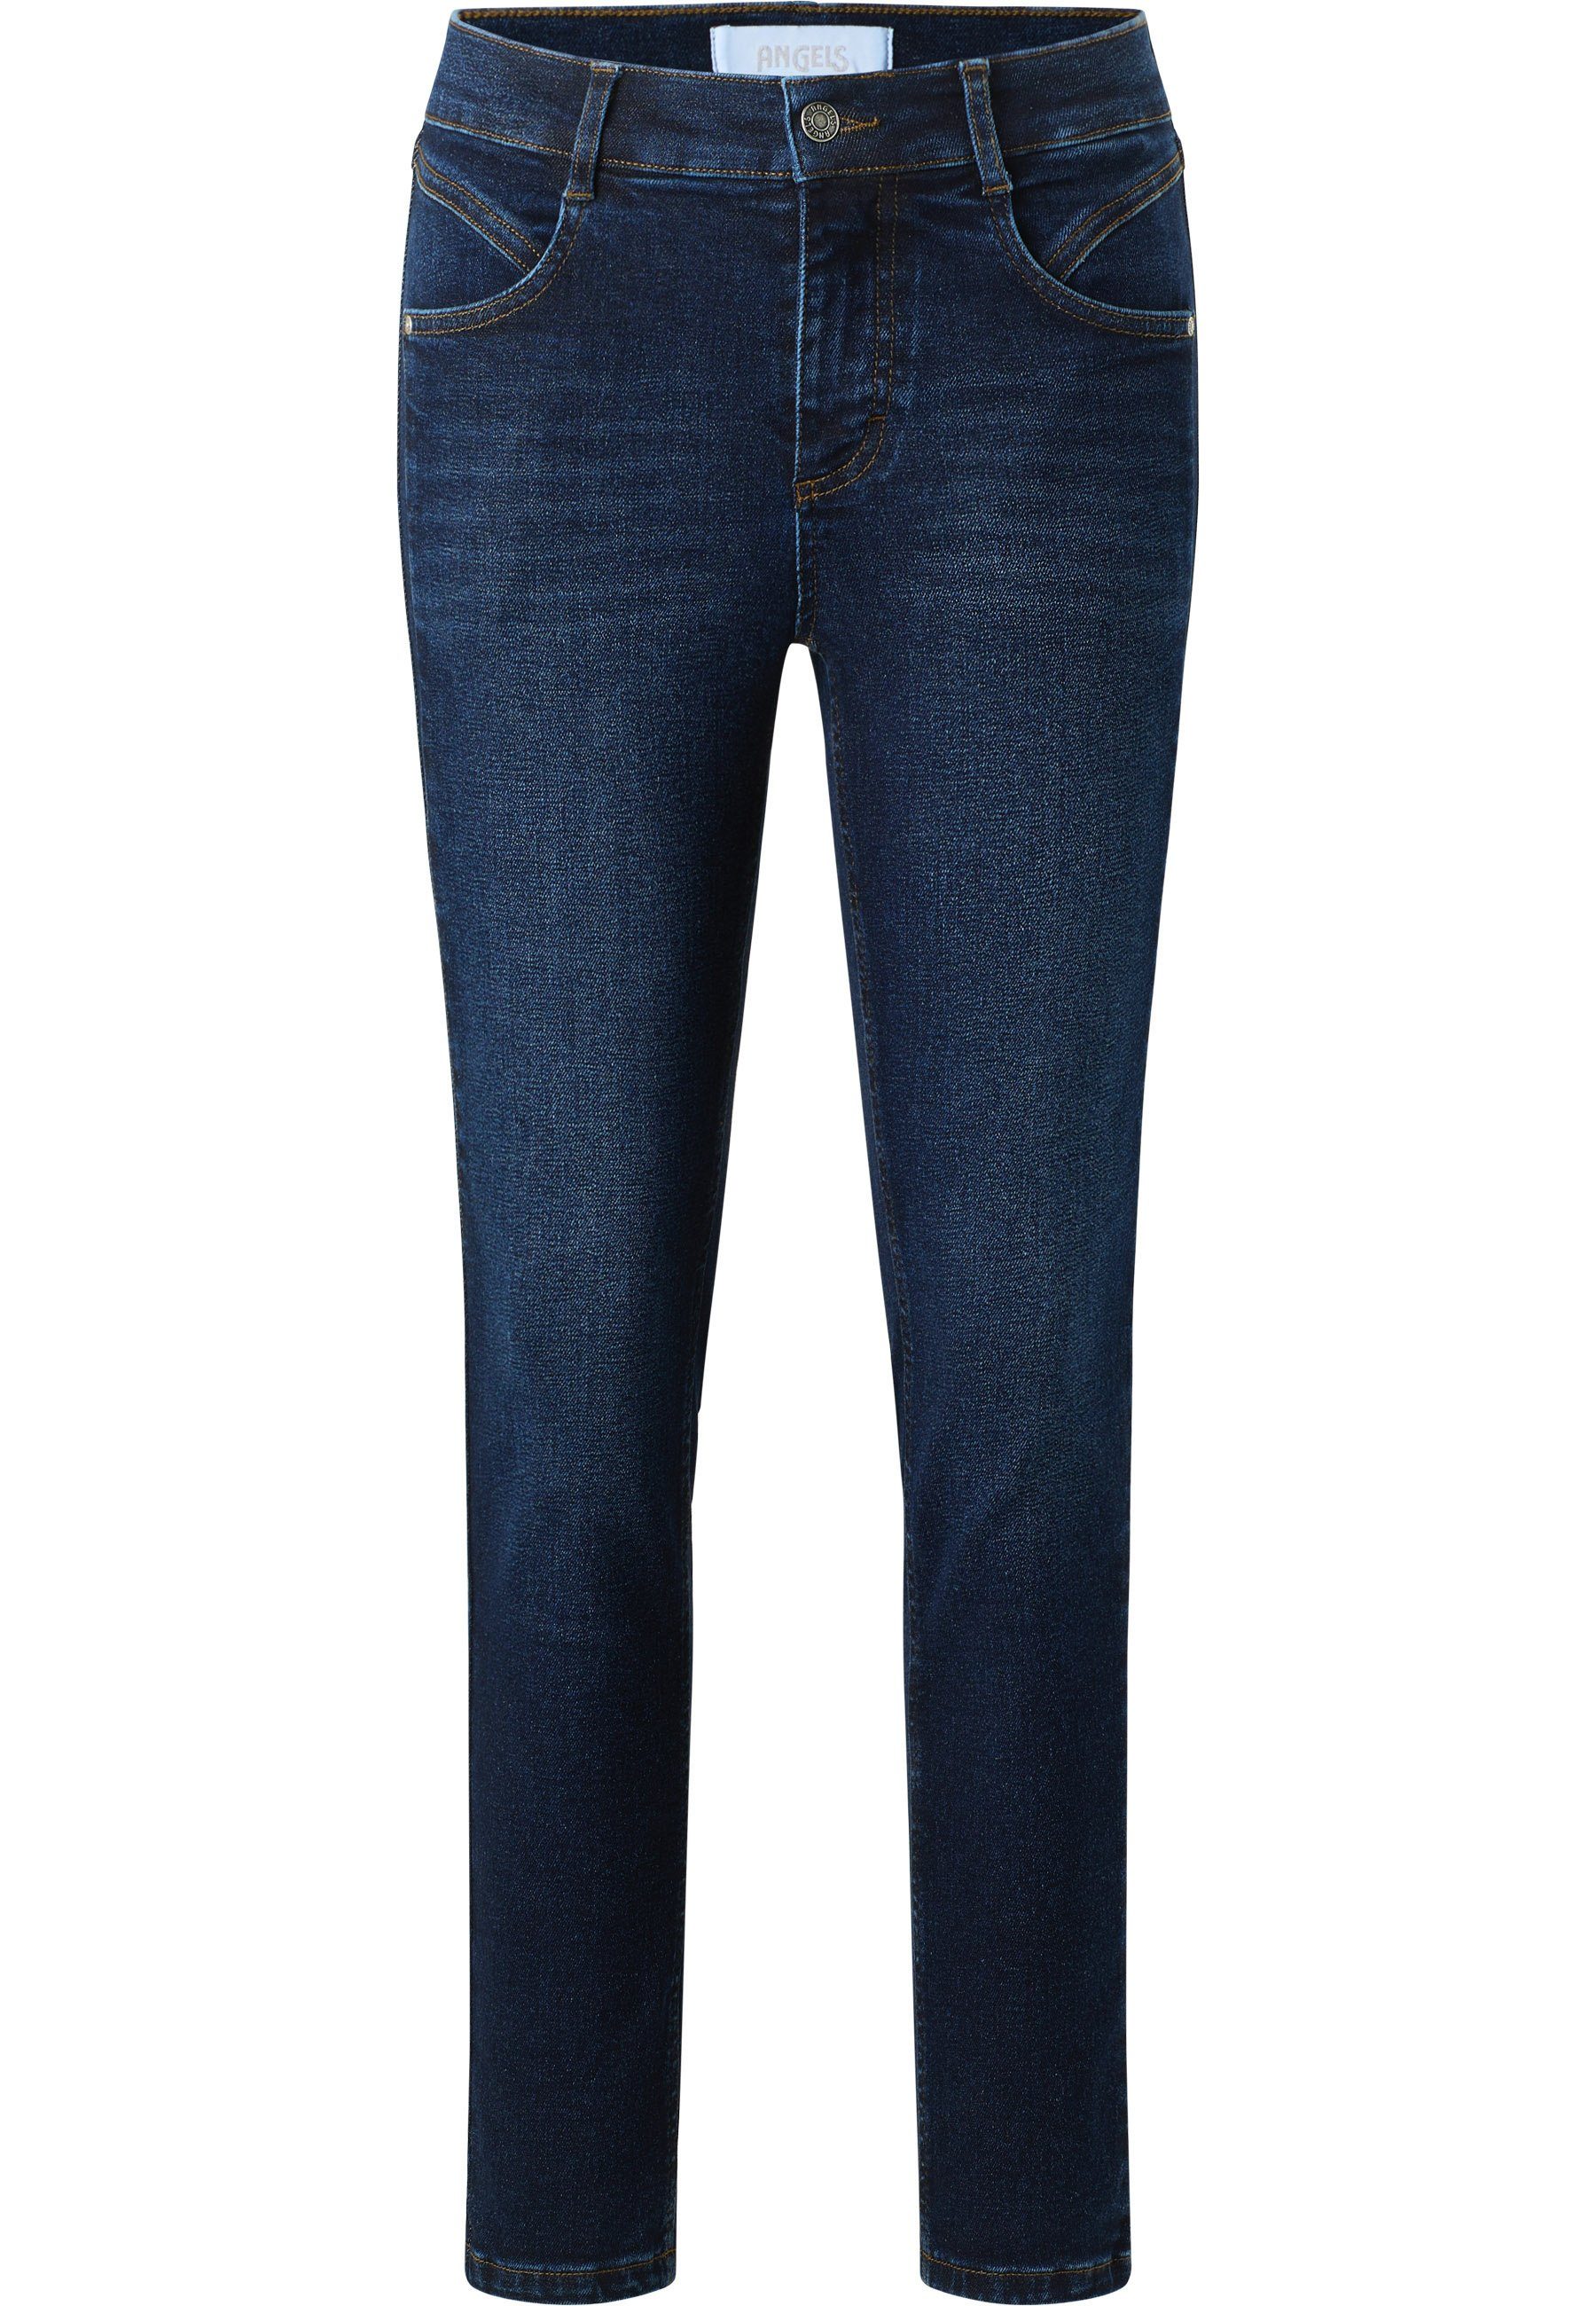 Seam Jeans mit Reißverschluss Slim-fit-Jeans Vintage dunkellila Ornella ANGELS